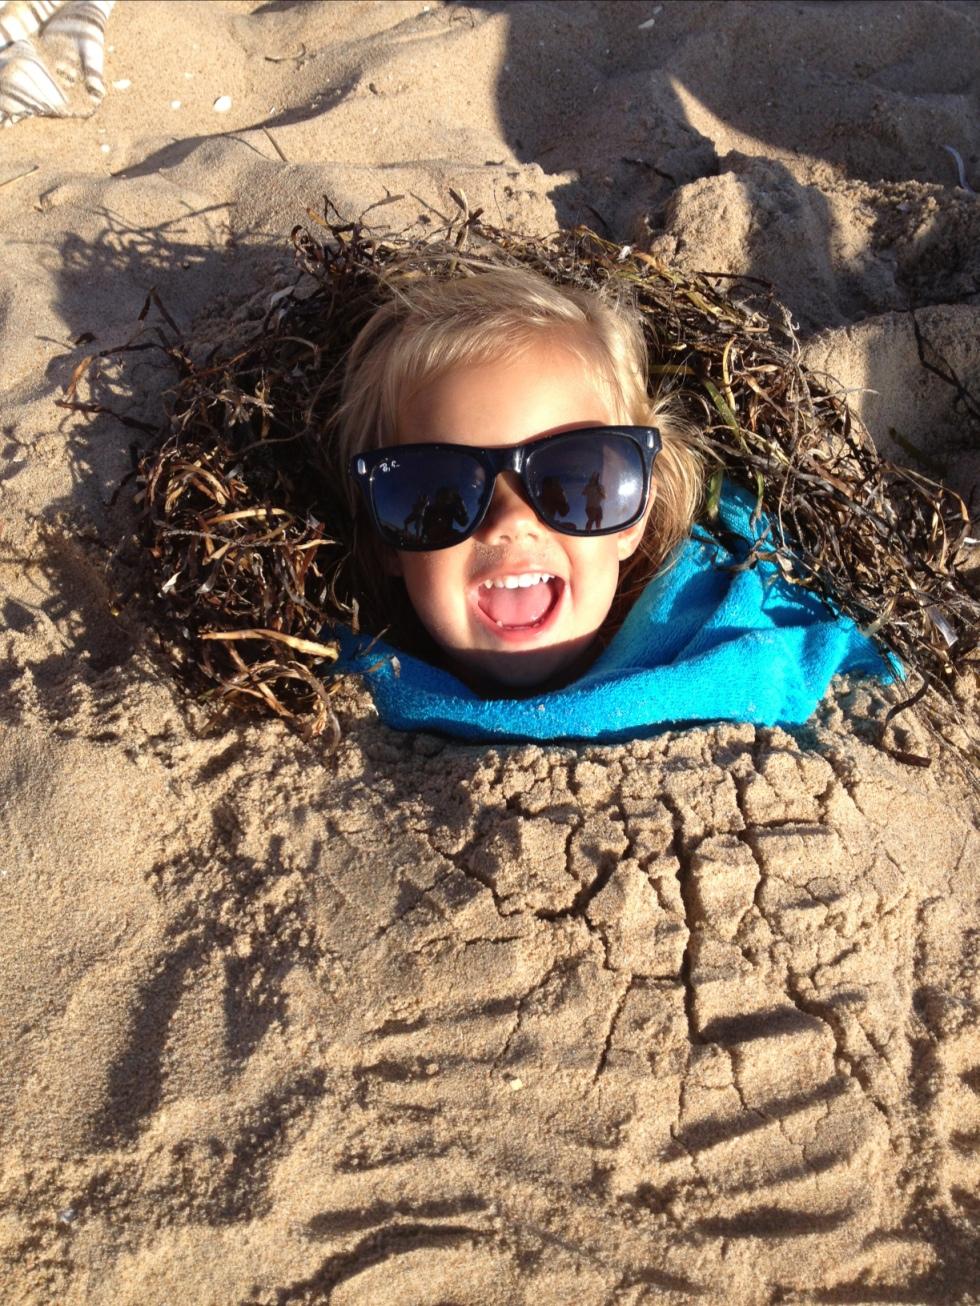 Moster gräver ner vår busiga dotter Nova, 2, i sanden en kväll på stranden, skriver Emma.